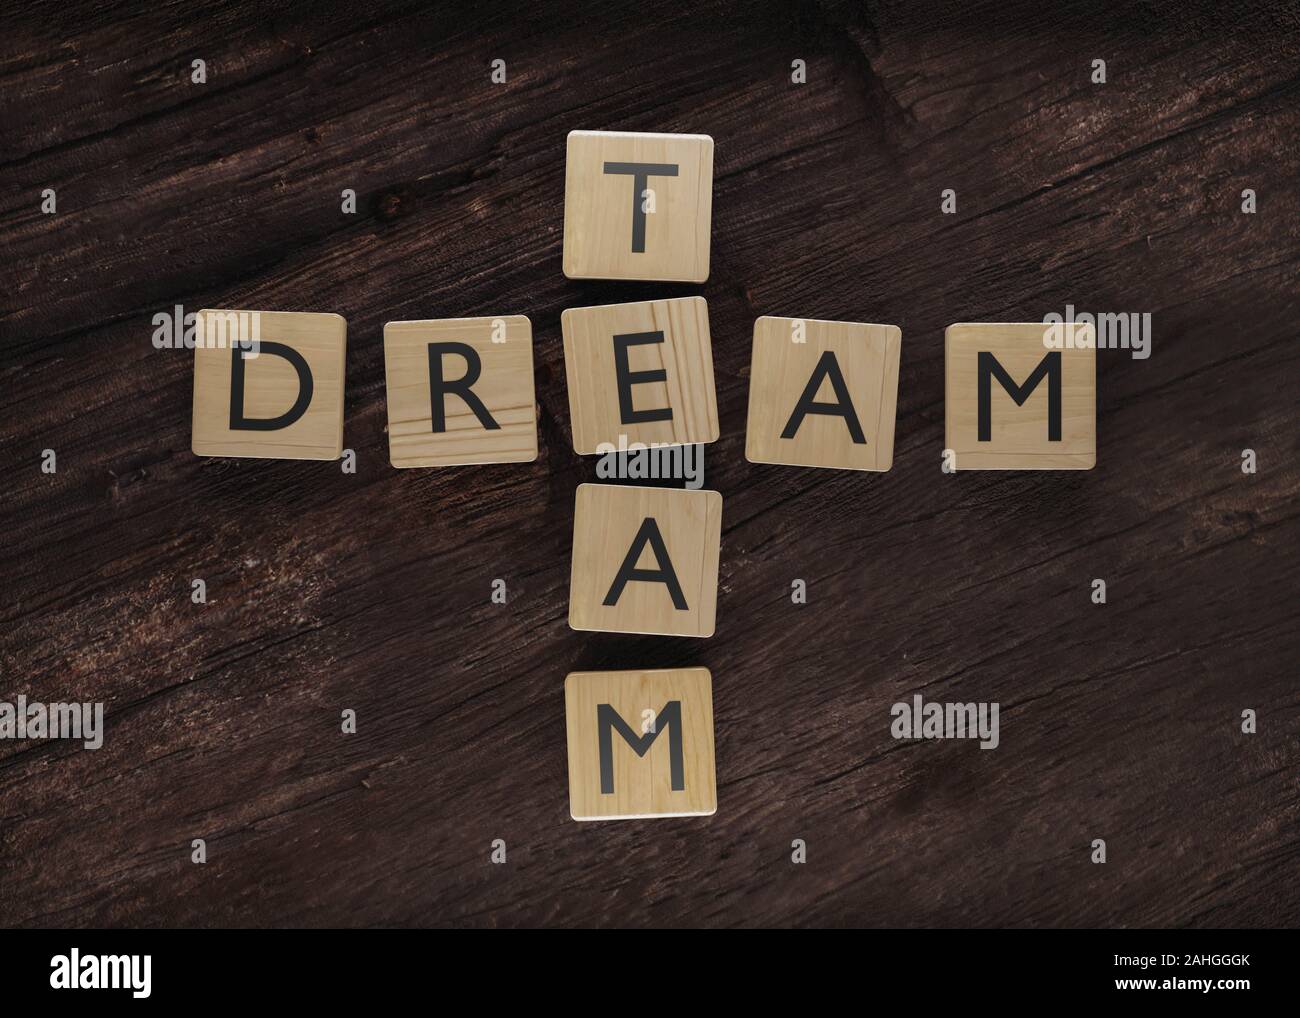 Dream team concept art faite de cubes en bois avec des lettres de rendu 3d illustration Banque D'Images